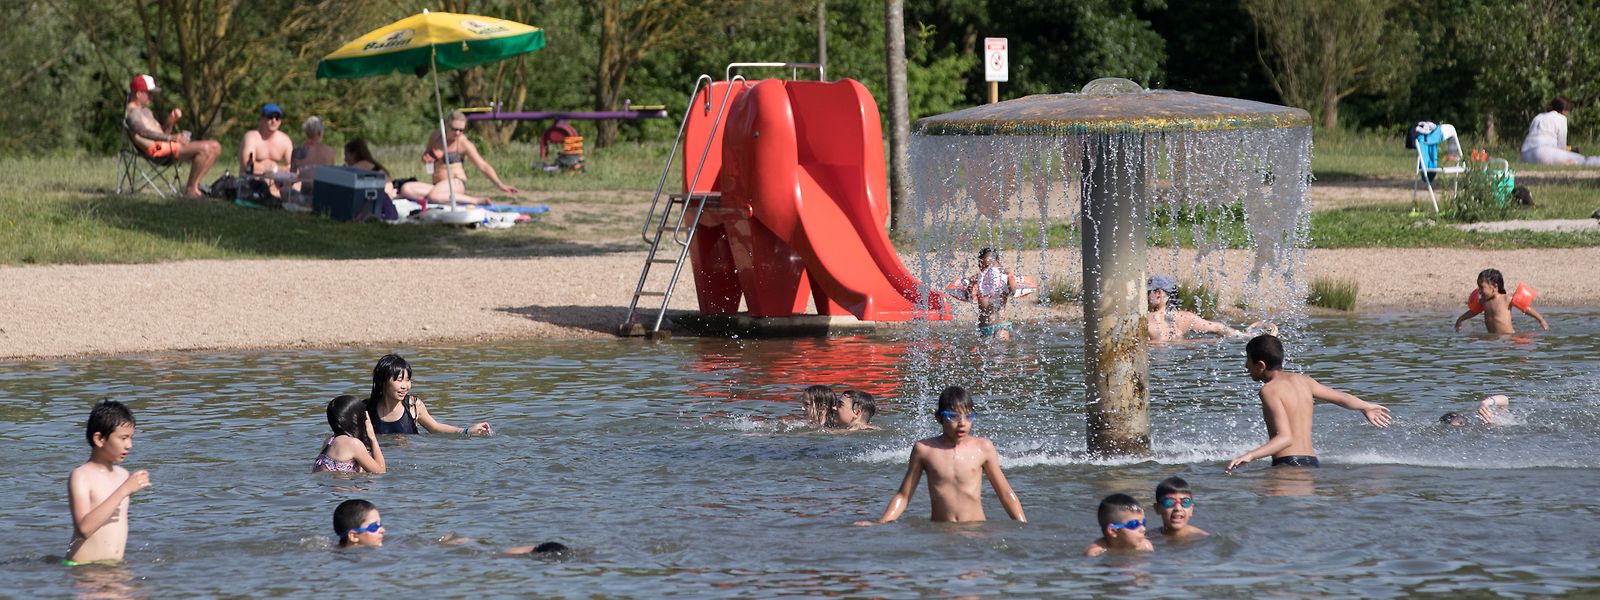 Baggerweiher in Remerschen: Während der außergewöhnlichen Sommerhitze suchen die Badegäste Abkühlung.